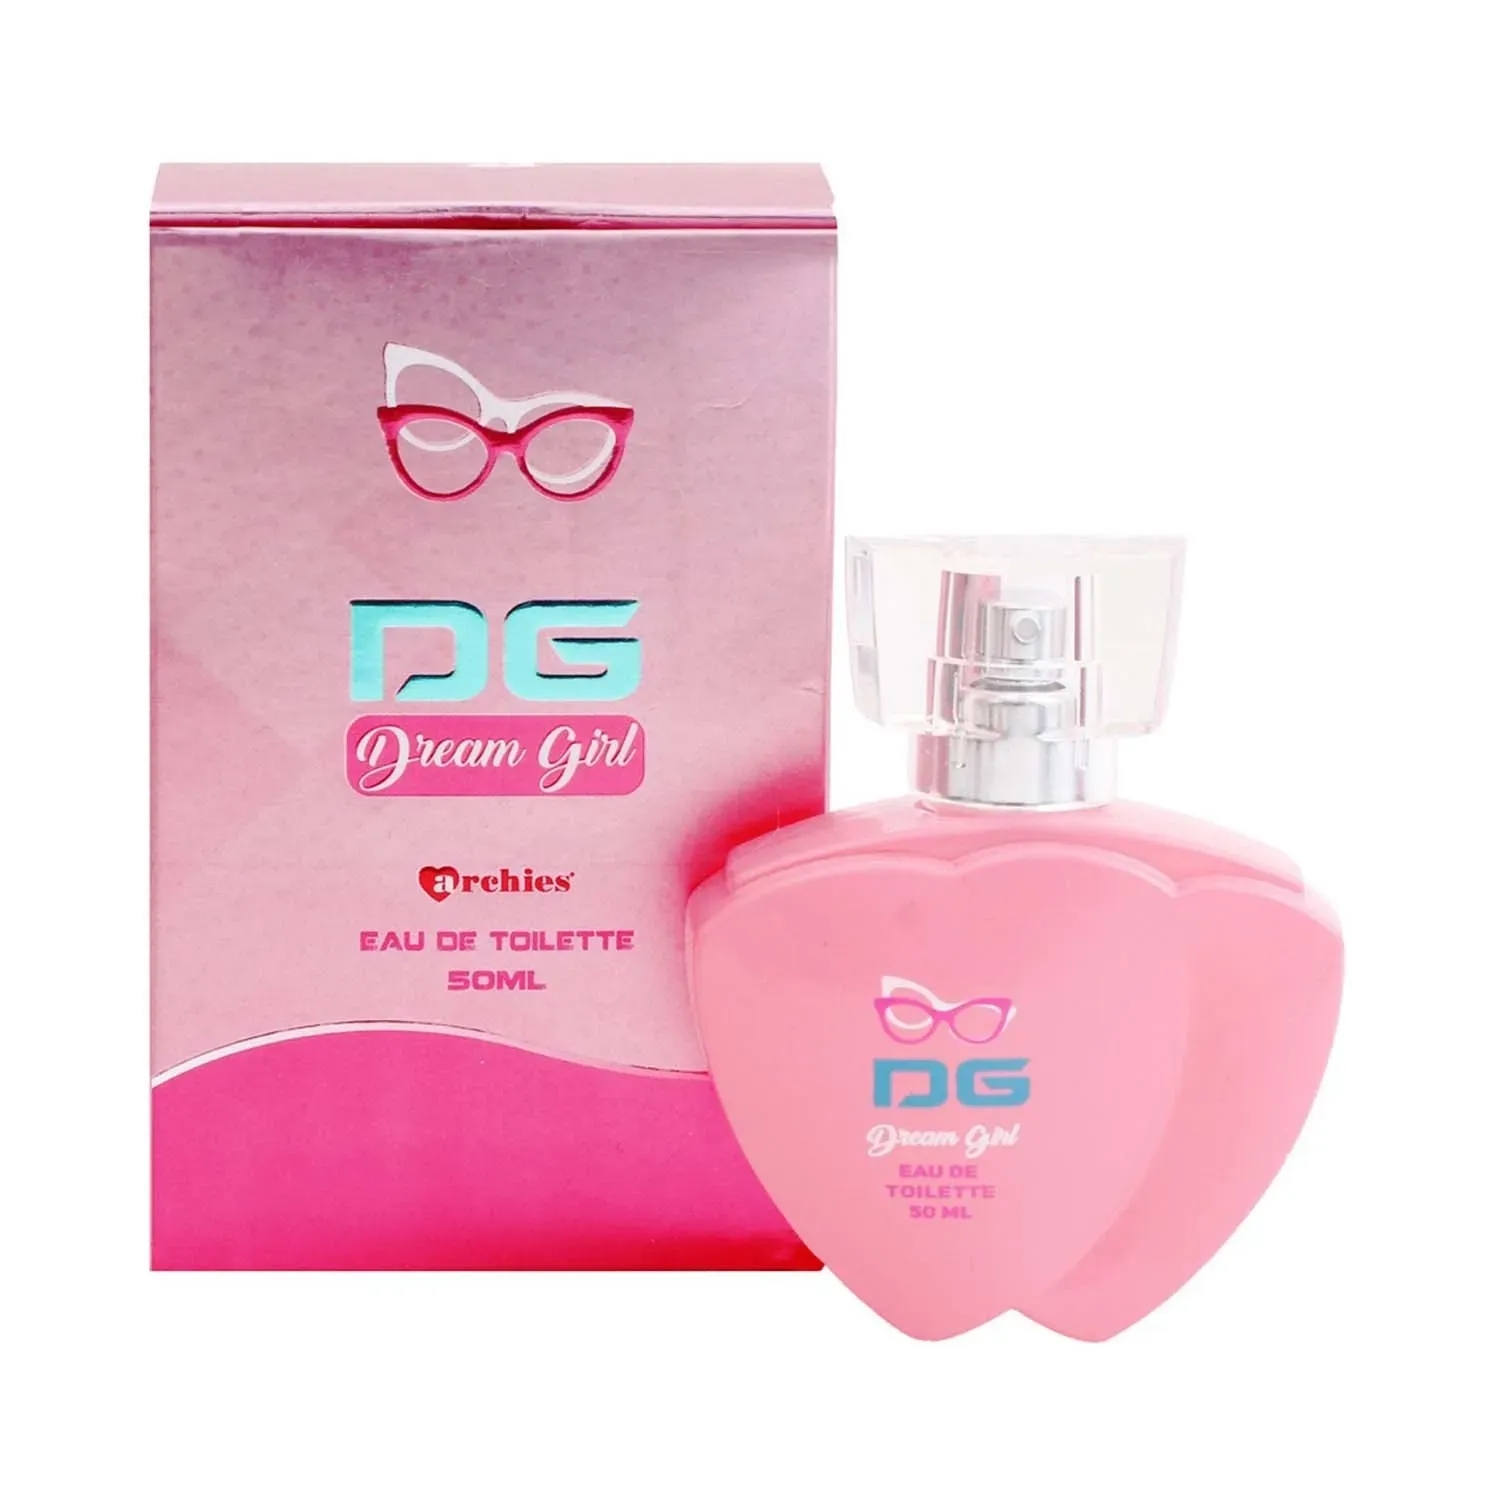 Archies Parfum Dream Girl Eau De Toilette (50ml)